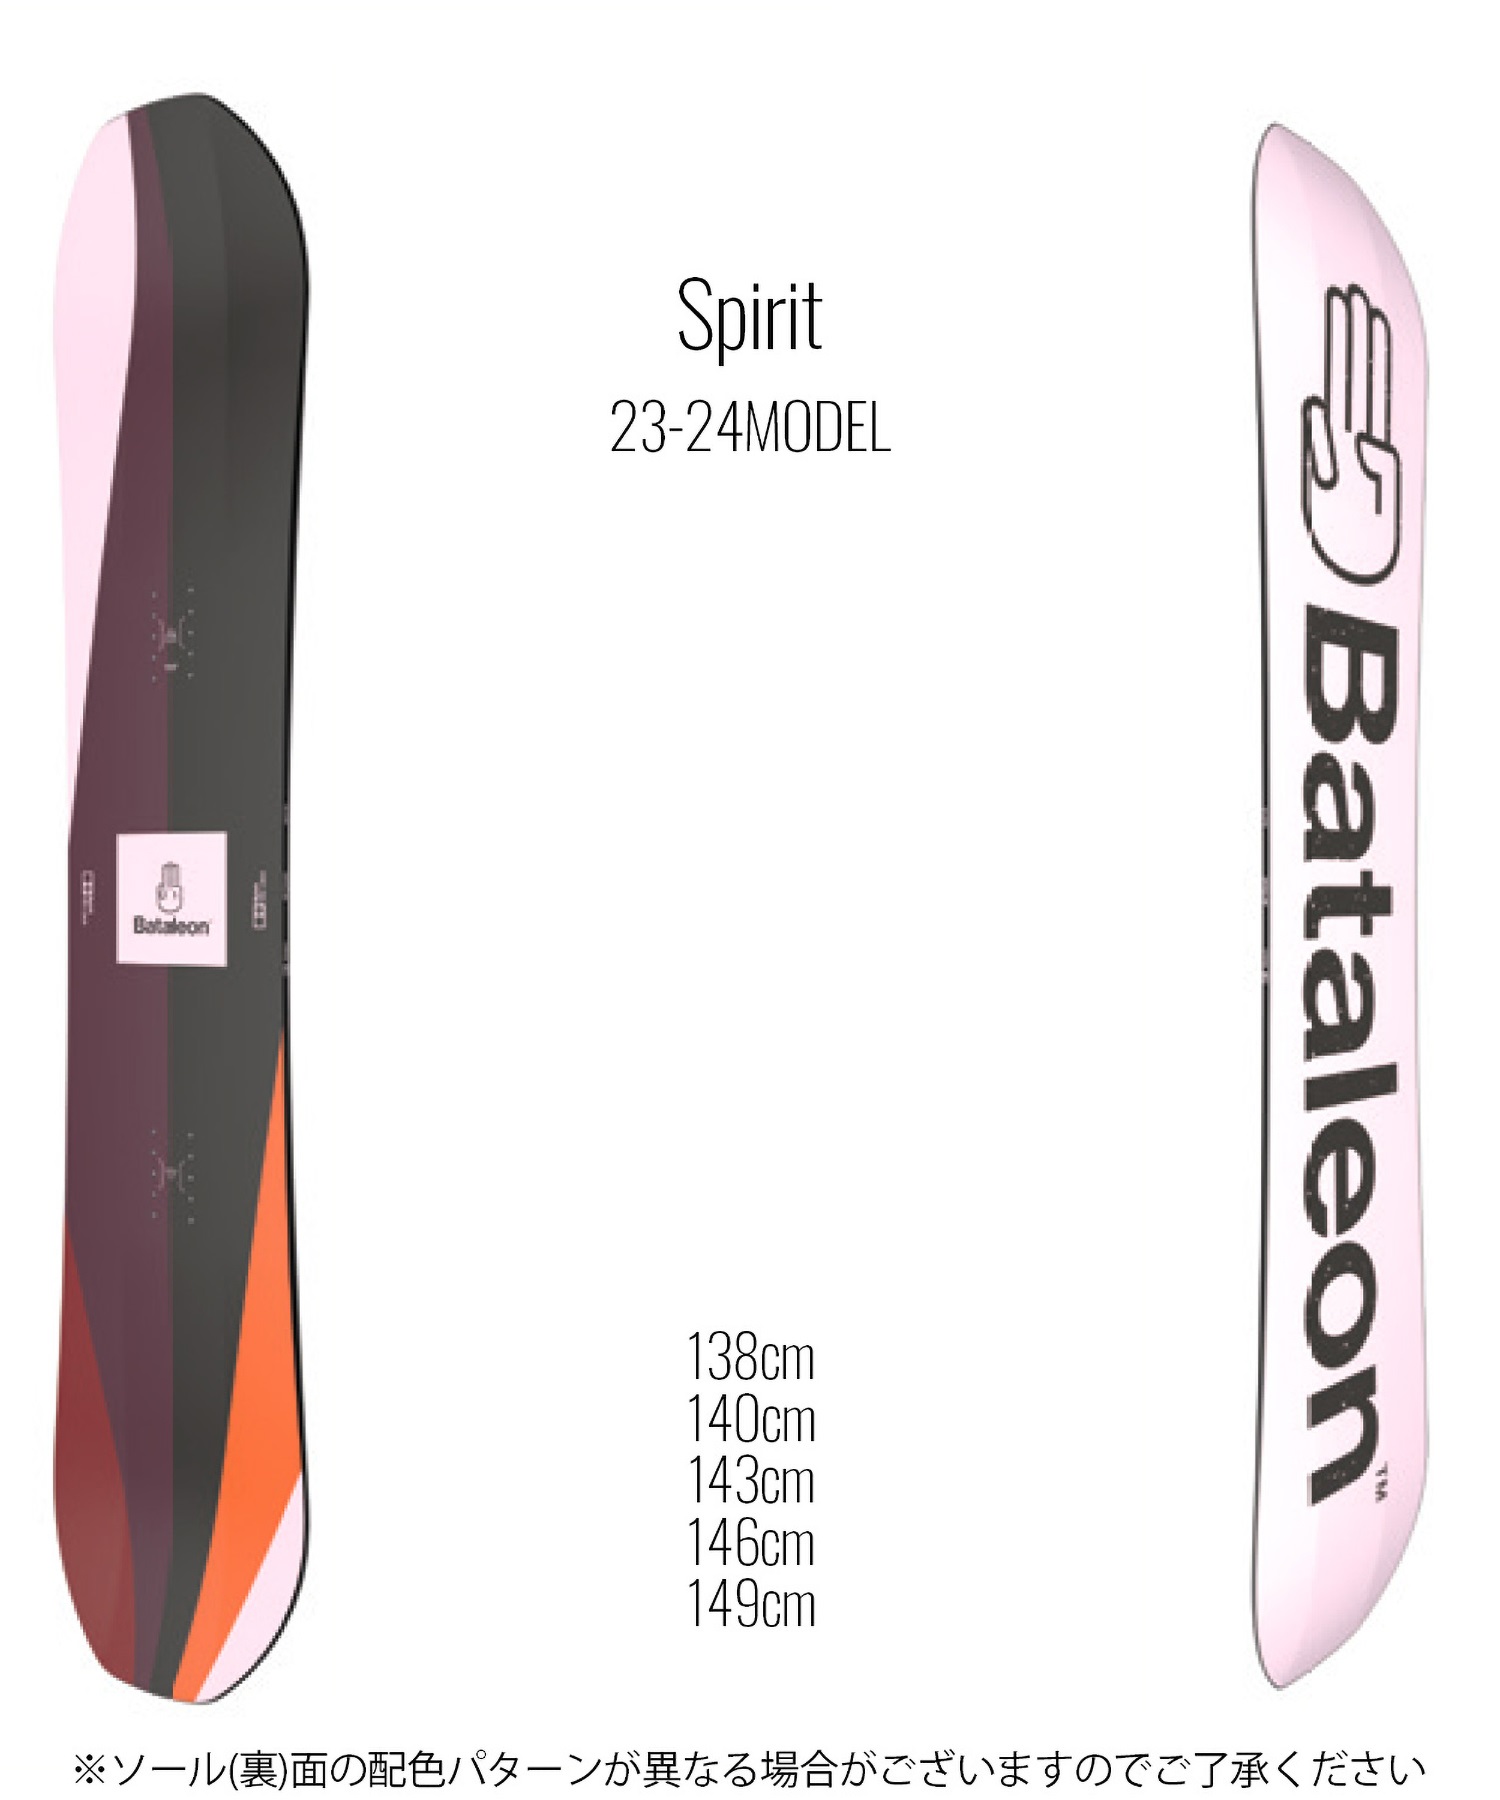 スノーボード 板 レディース BATALEON バタレオン Spirit 23-24モデル ムラサキスポーツ KK C10(Spirit-138cm)